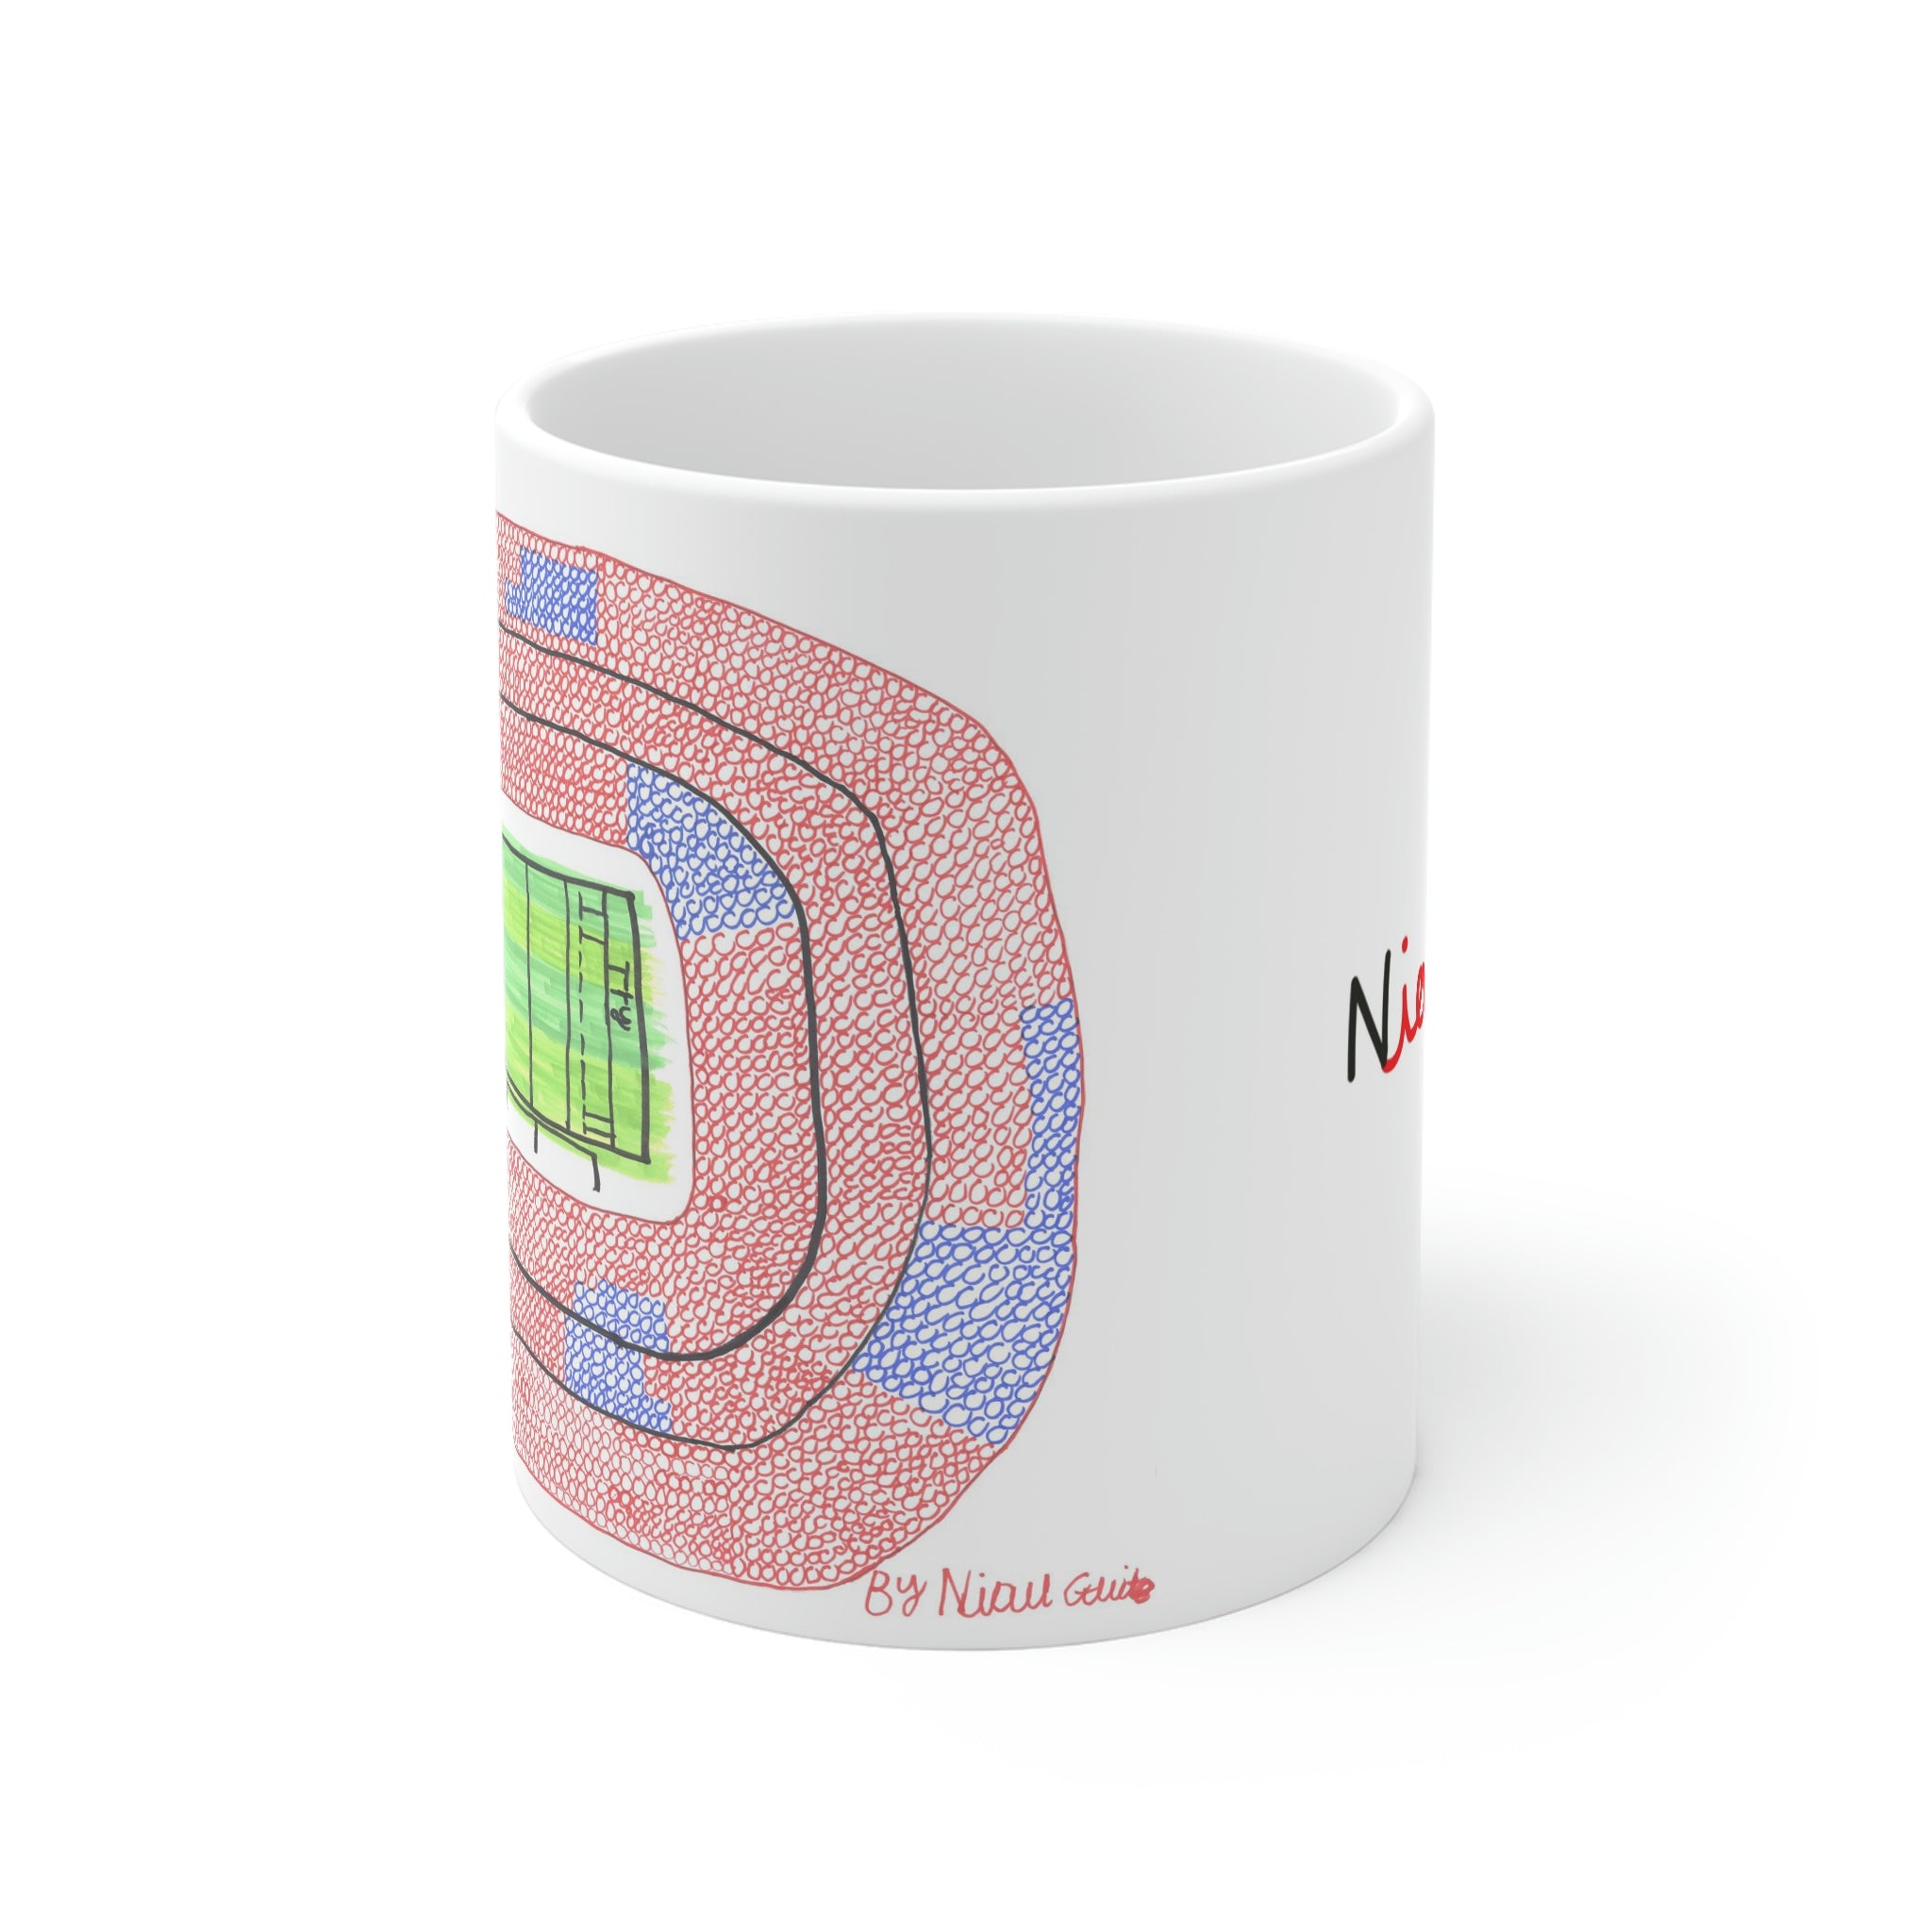 England Rugby - Twickenham Stadium - Mug